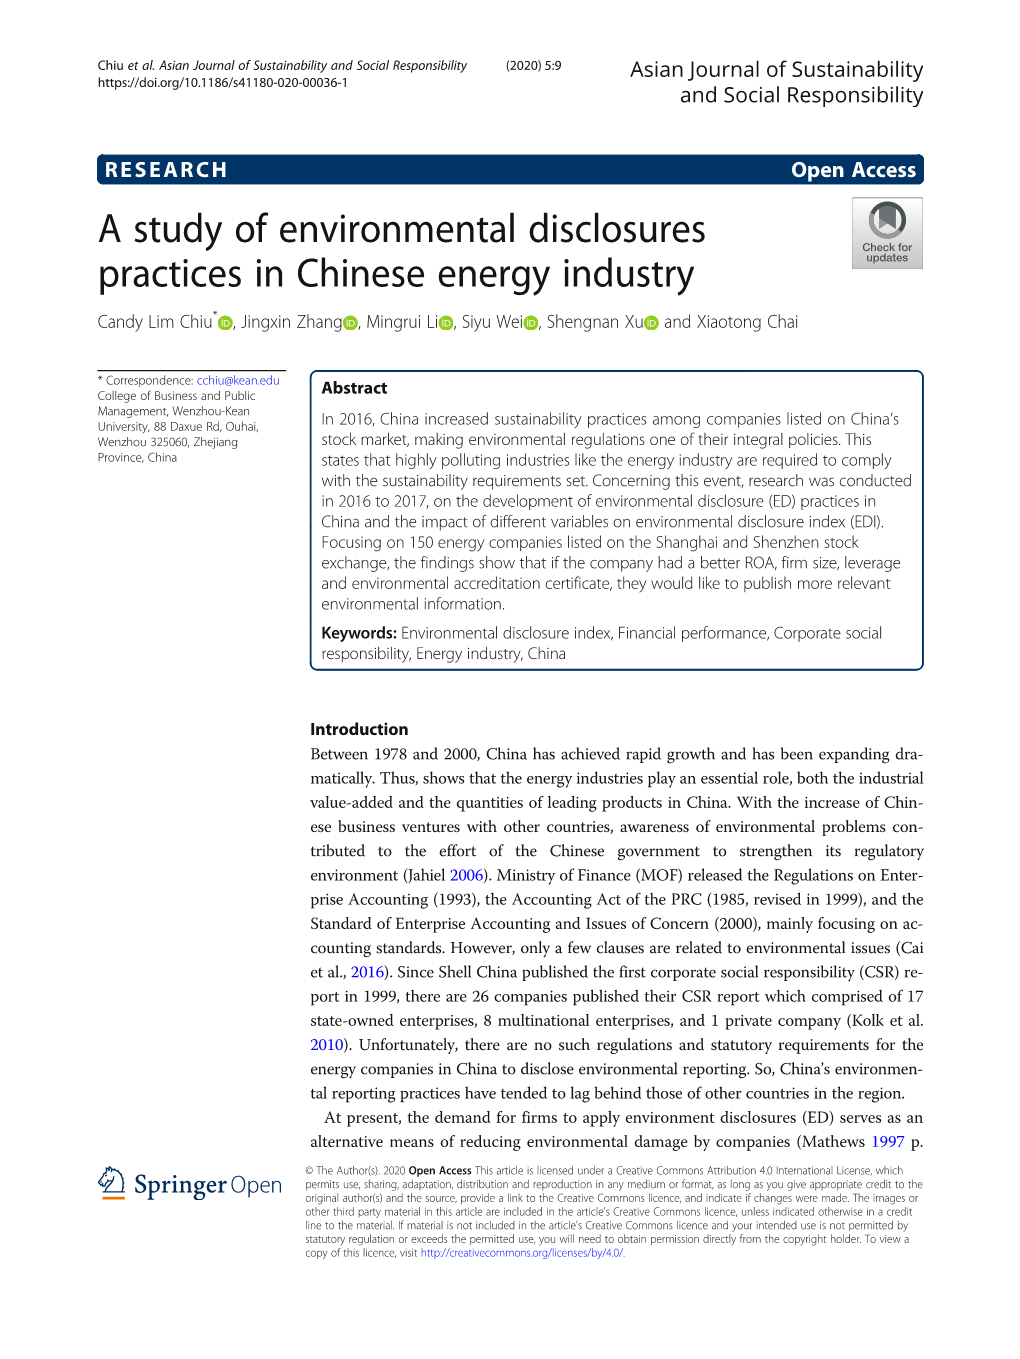 A Study of Environmental Disclosures Practices in Chinese Energy Industry Candy Lim Chiu* , Jingxin Zhang , Mingrui Li , Siyu Wei , Shengnan Xu and Xiaotong Chai